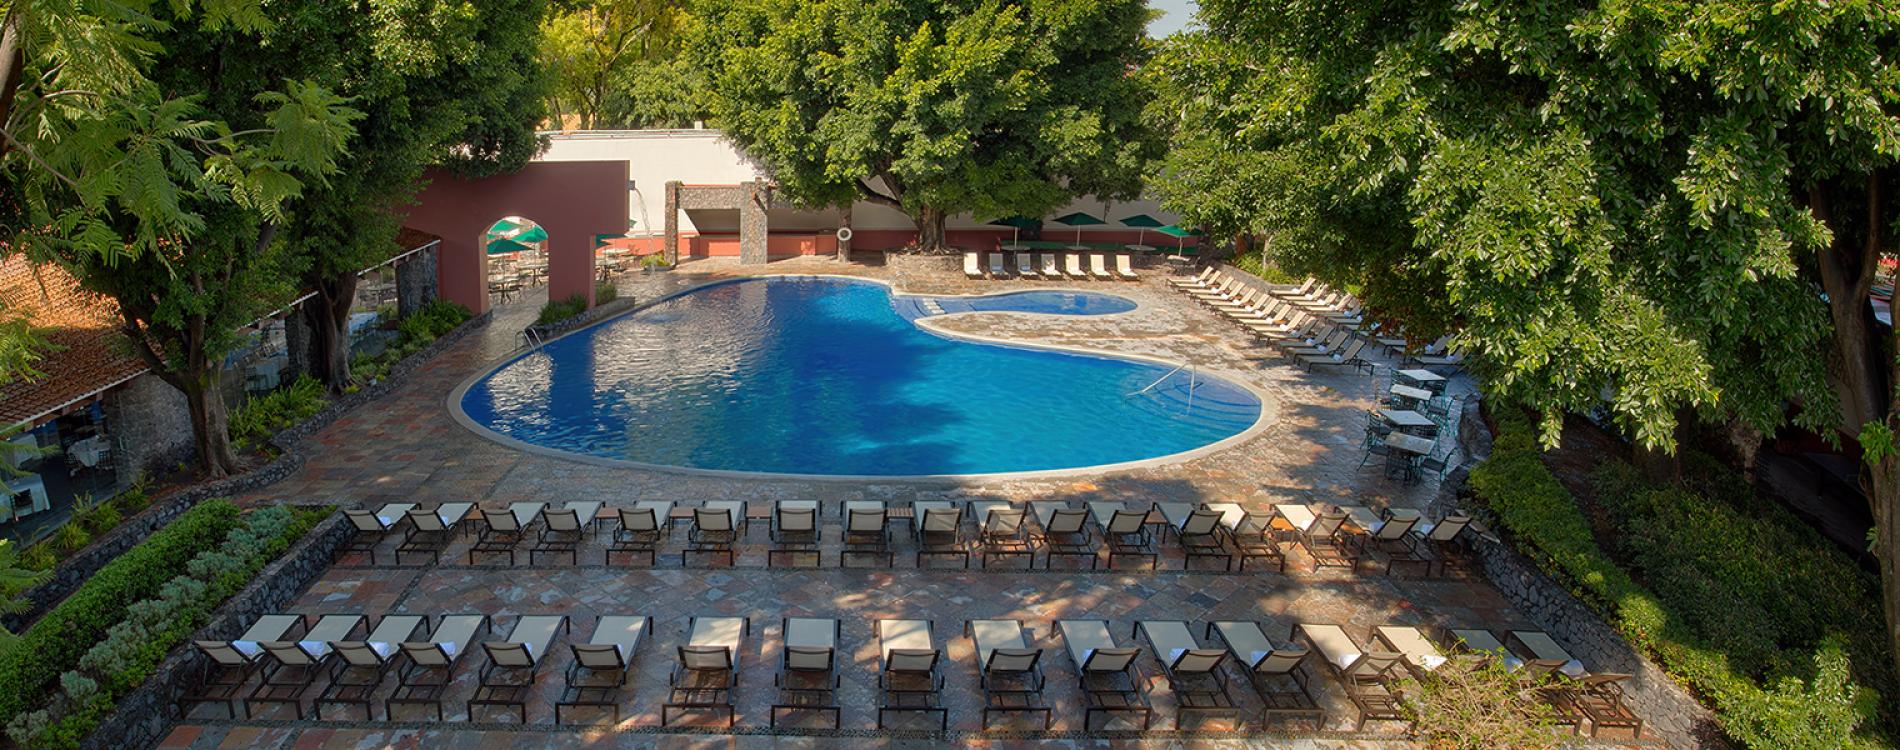 Hacienda Jurica by Brisas, in Queretaro, Mexico - Preferred Hotels & Resorts